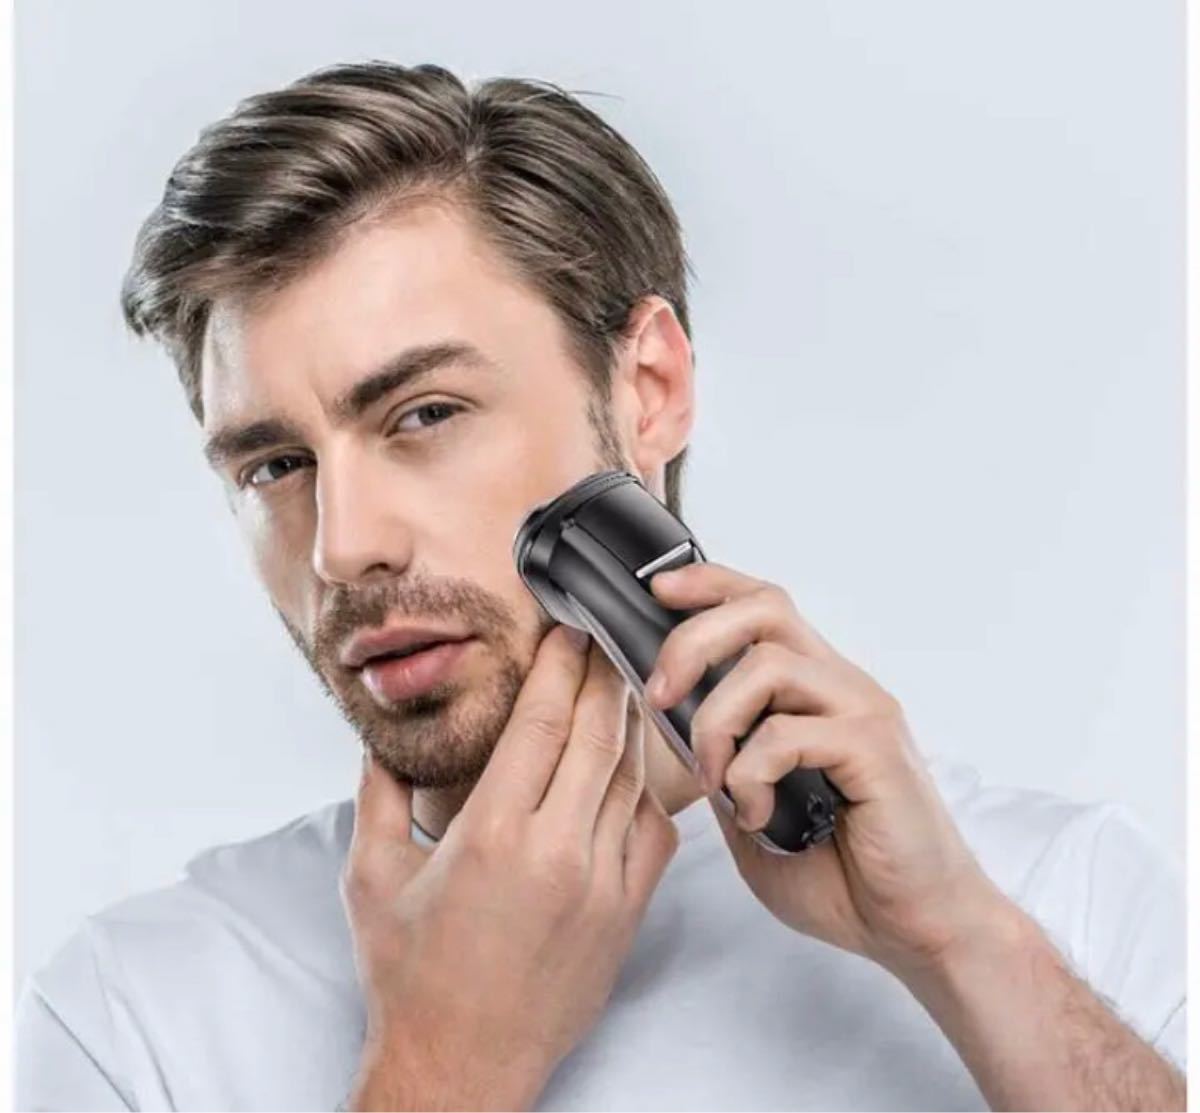 髭剃り 電気シェーバー メンズカミソリ 回転式 3枚刃 IPX7防水 急速充電